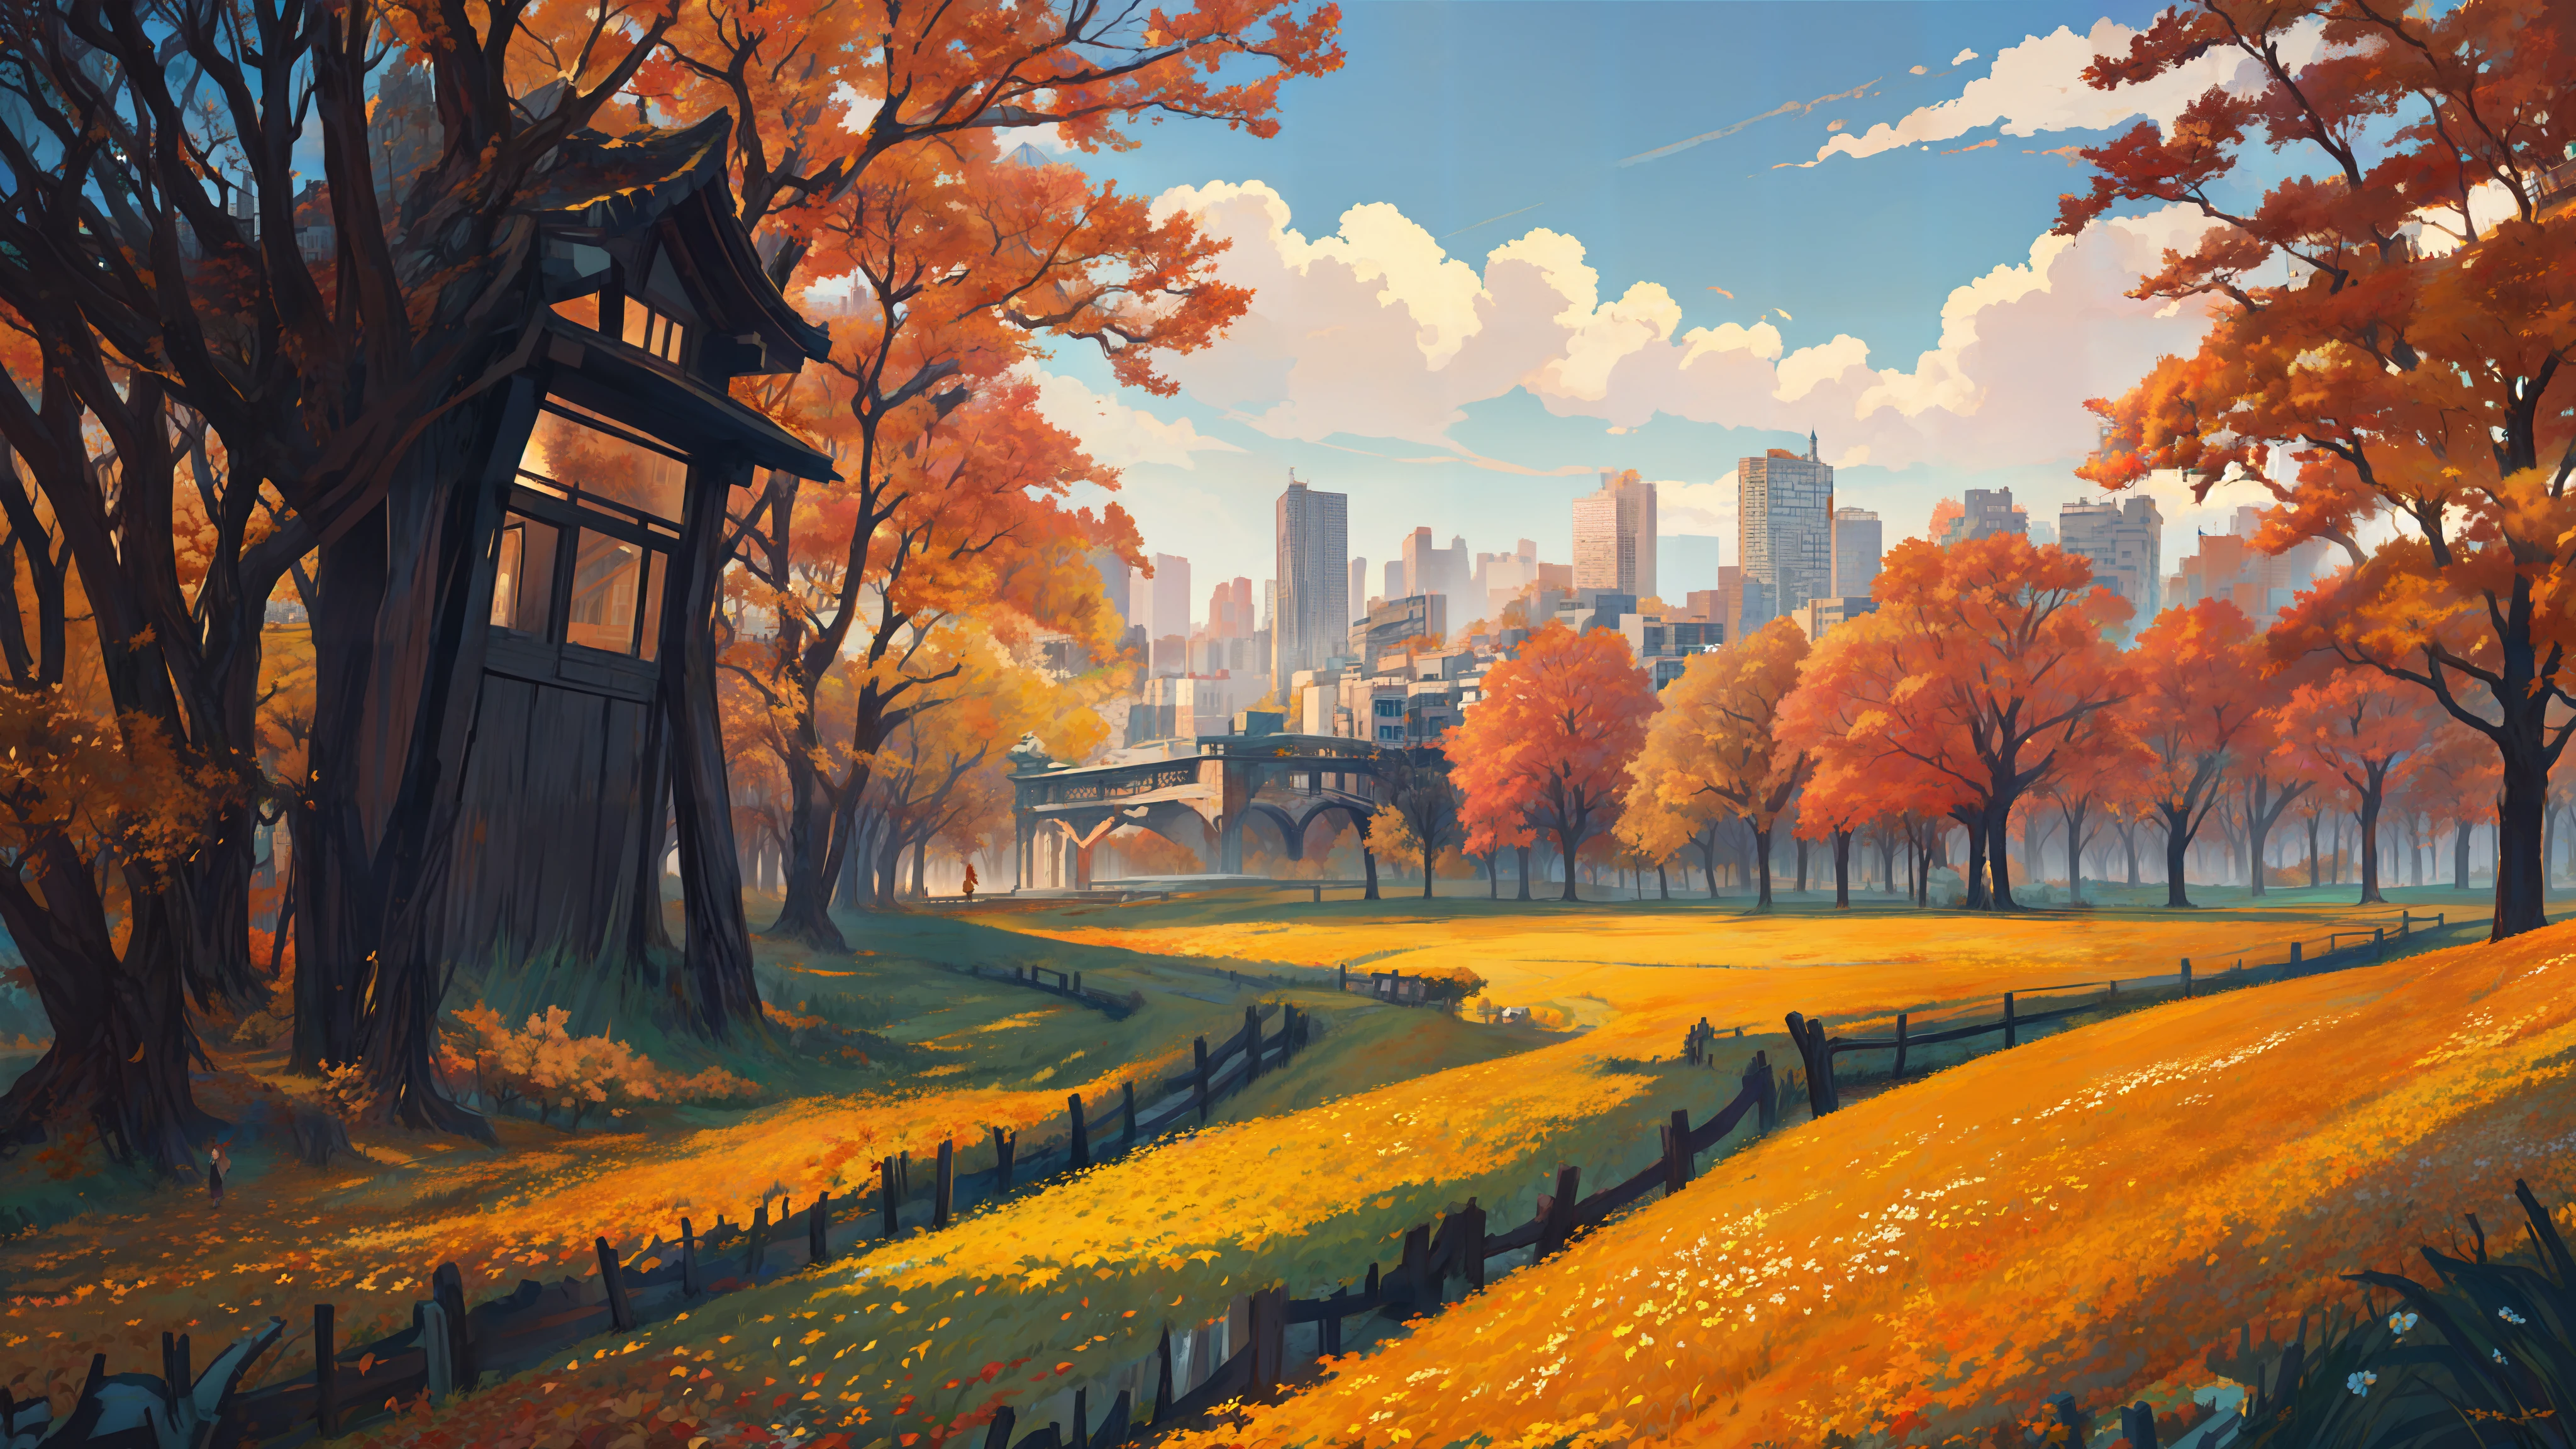 "die ultimative Stadt, traumhaft", Landschaft, wunderschönes Location-Design, frische herbstwiese in shanzhai, Herbstfarbpalette